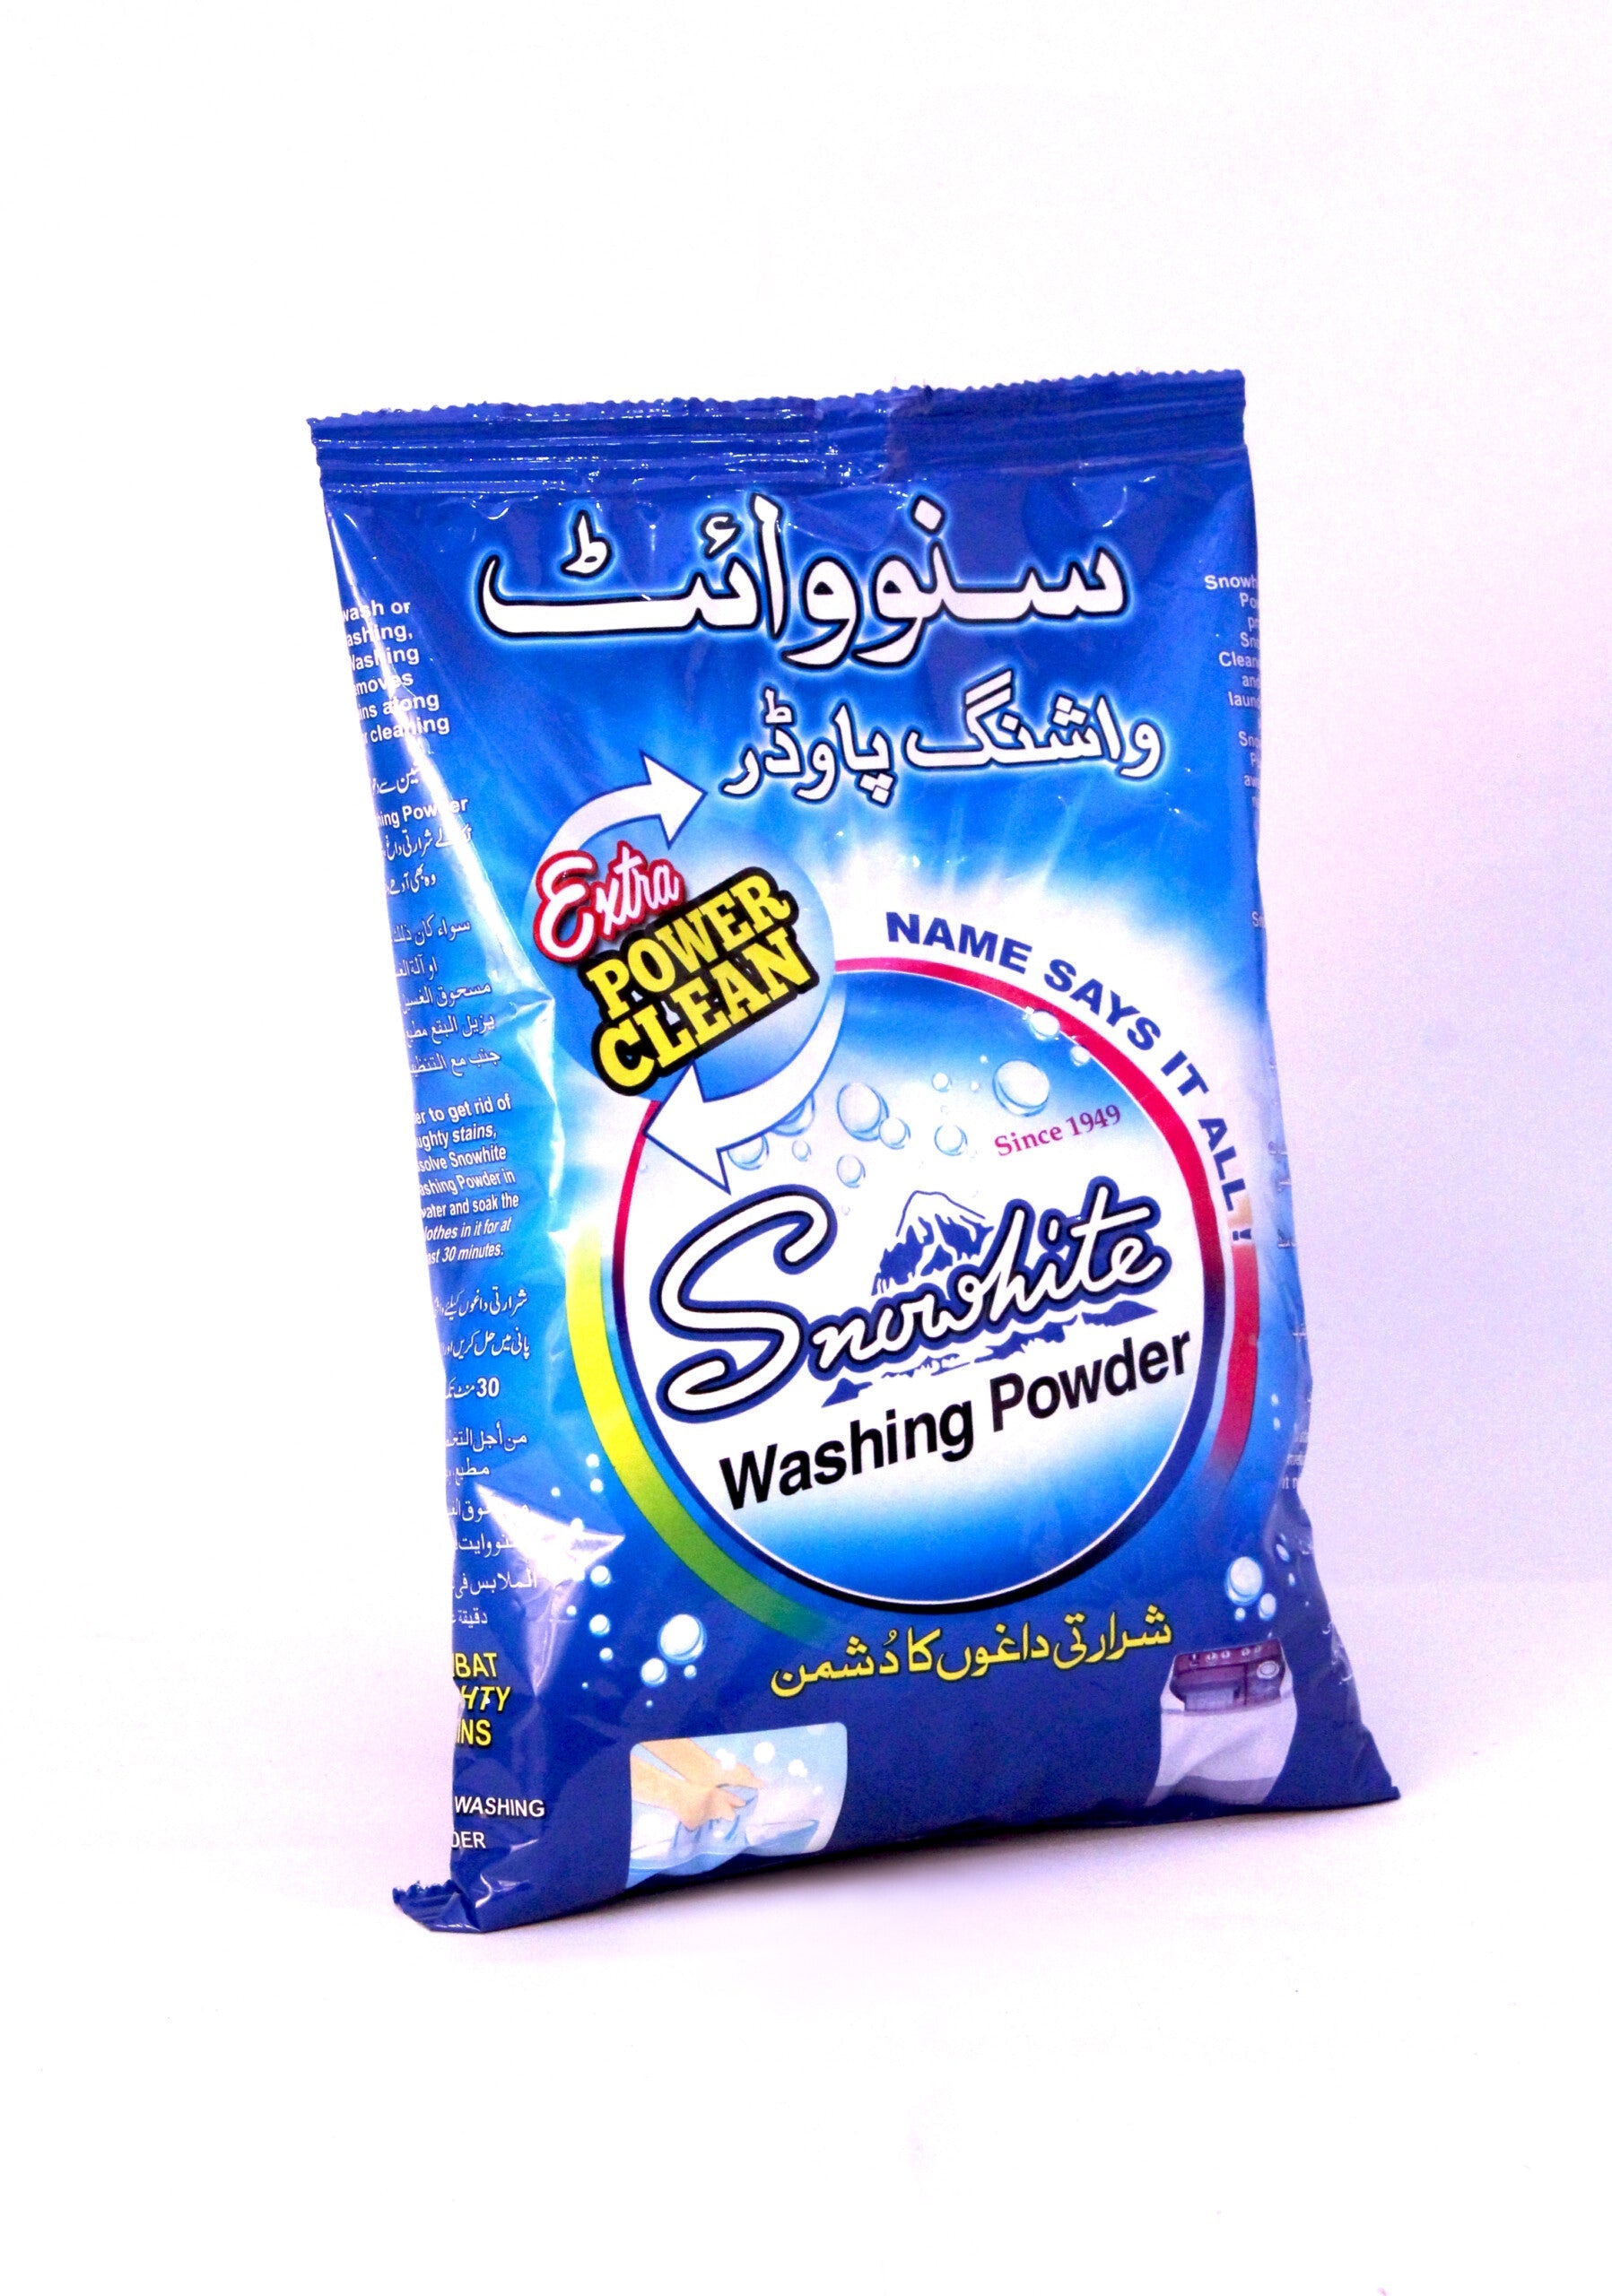 Buy 3 (250x3=750) Snowhite washing powder 500 gm Get 1 Packet Free